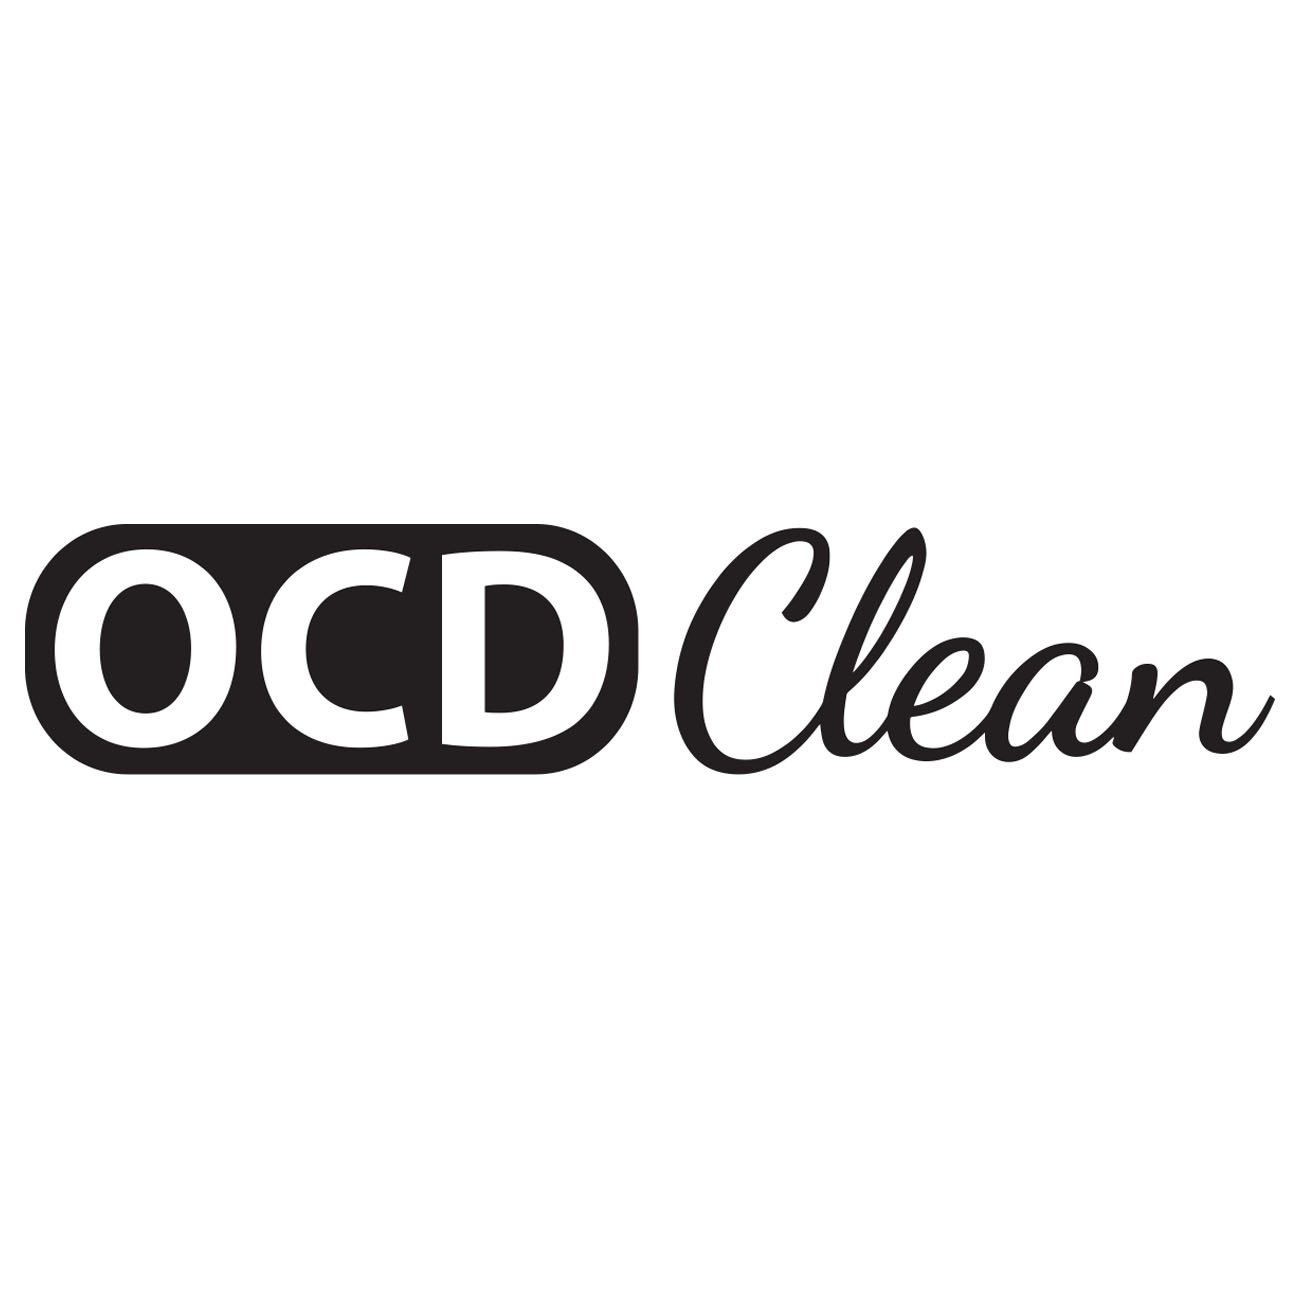 OCD Clean